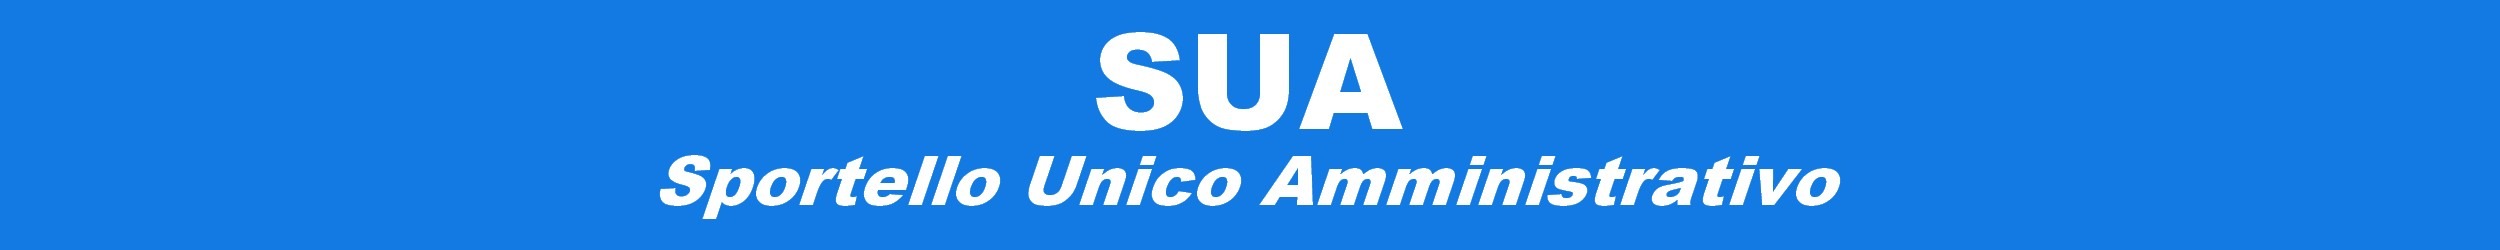 SUA - Sportello Unico Amministrativo